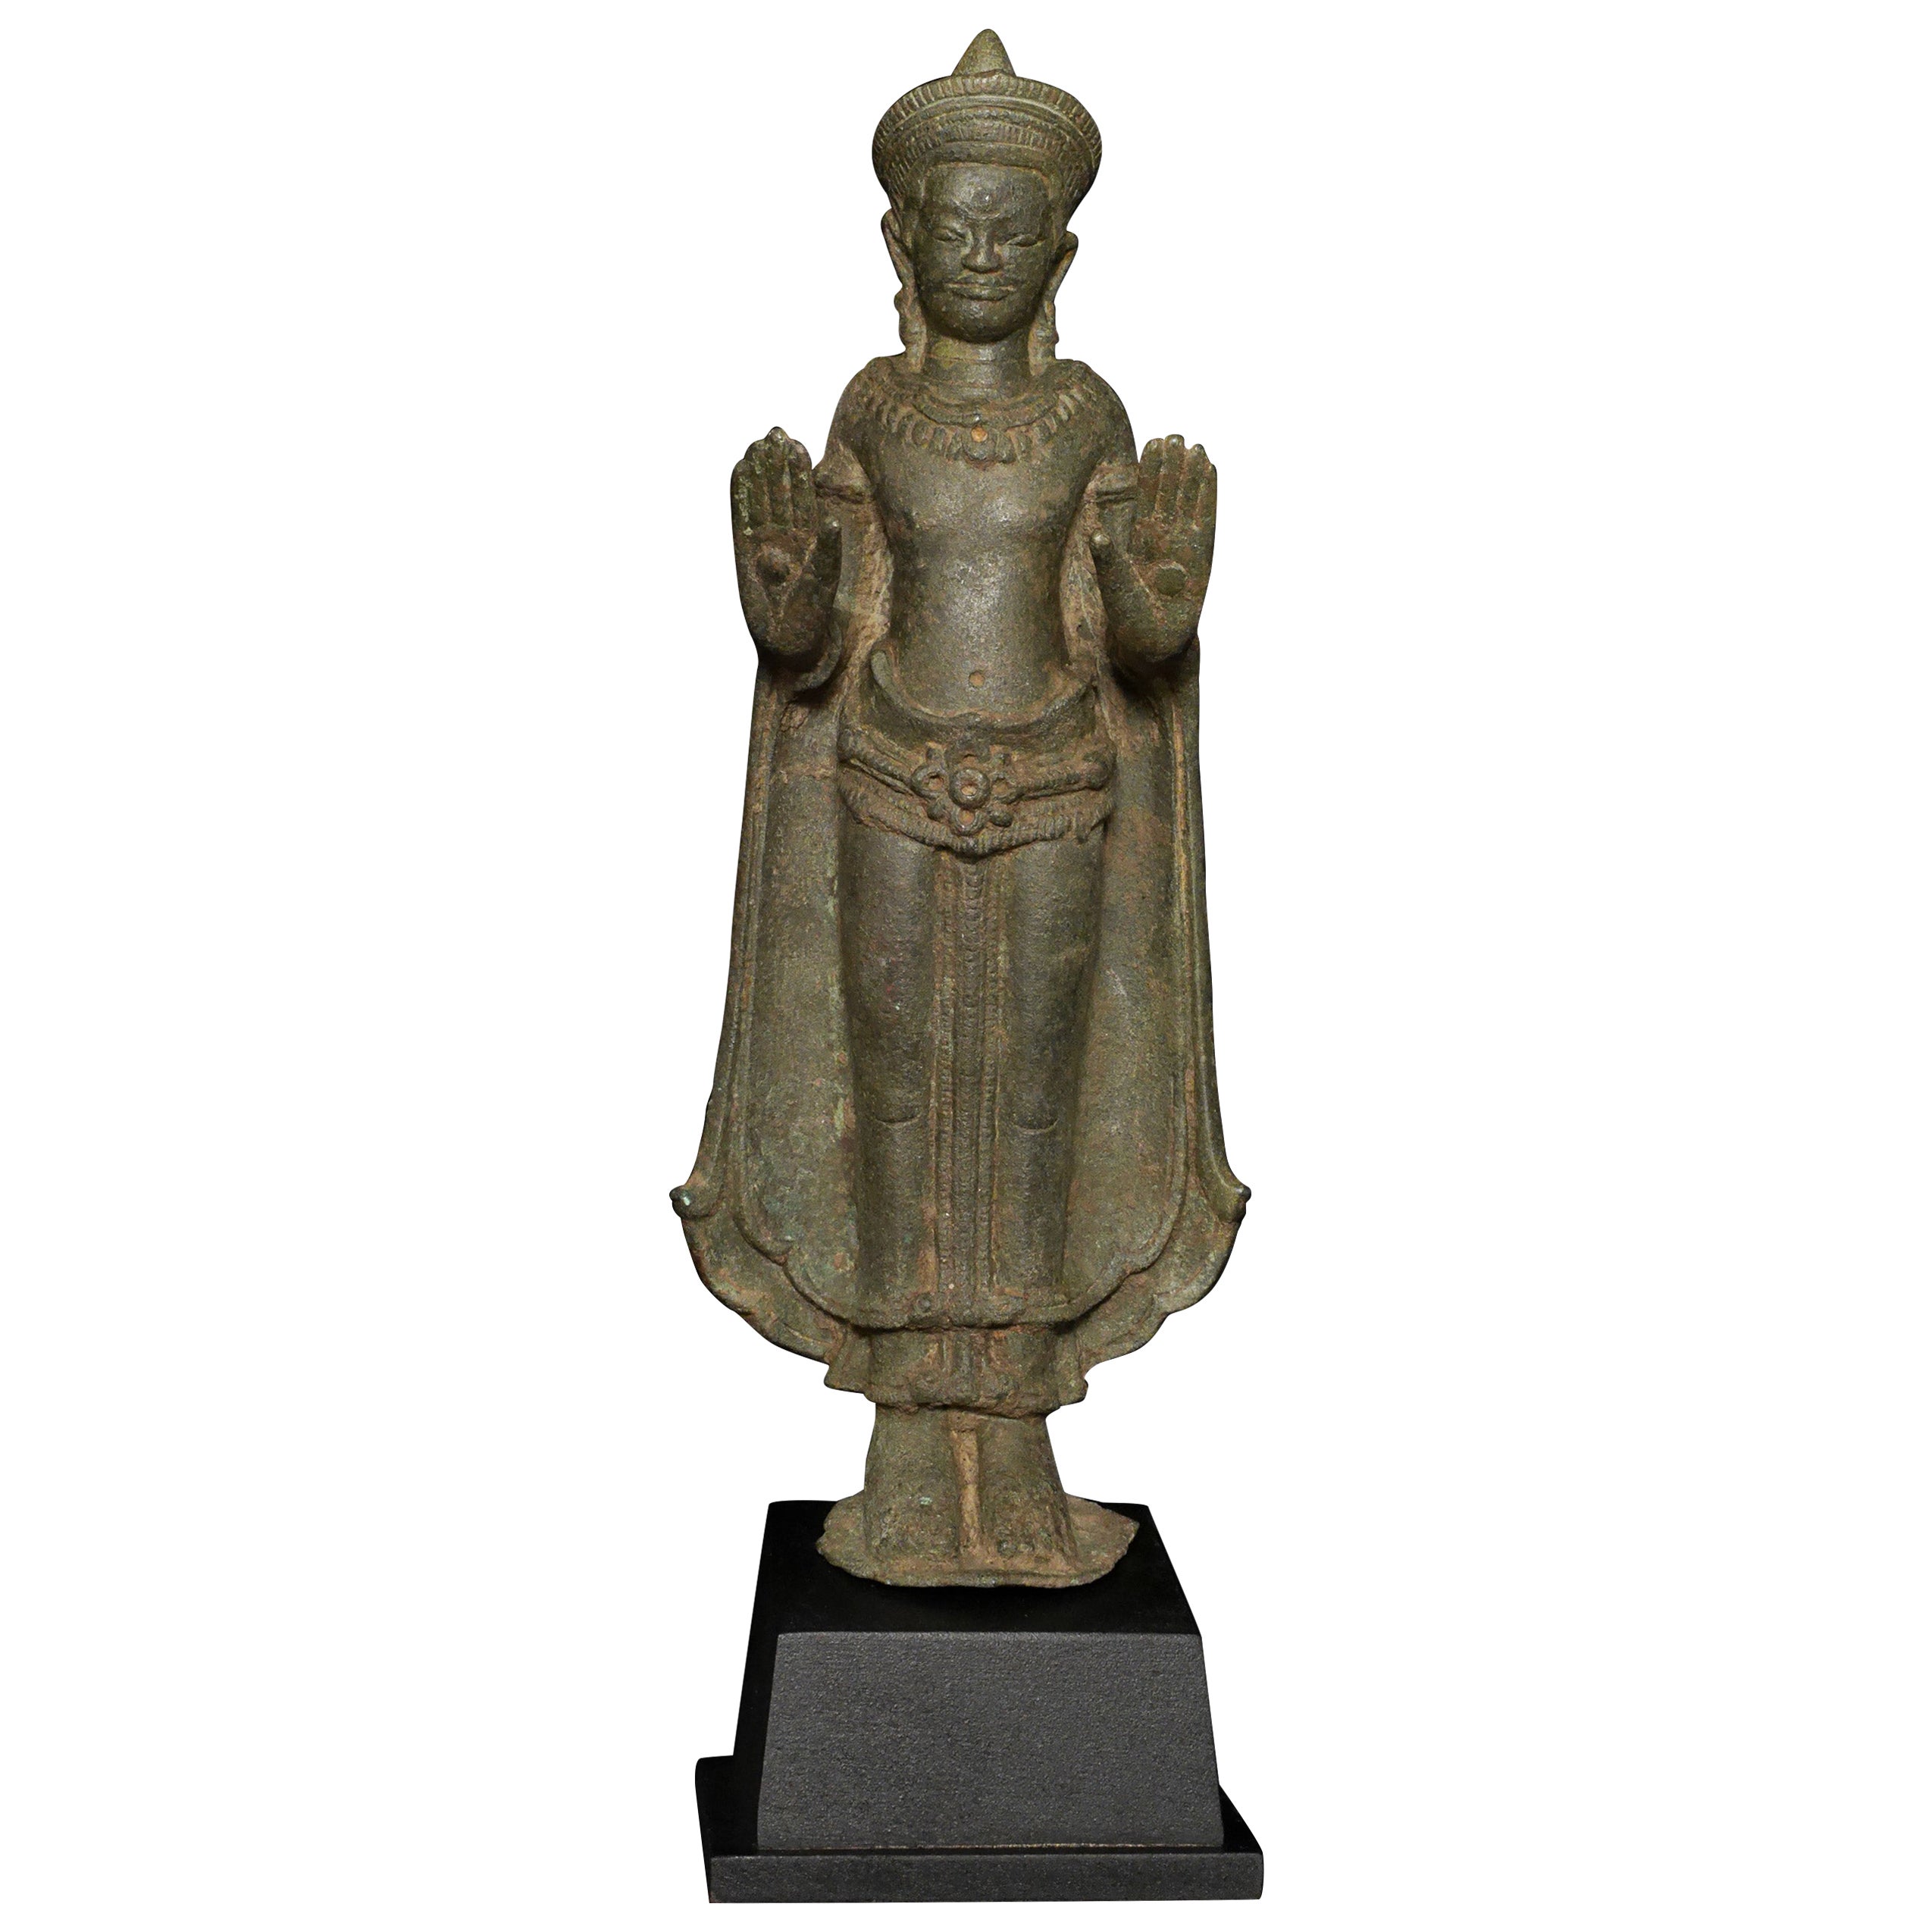 12/13thC Cambodian Standing Bronze Buddha - 7765